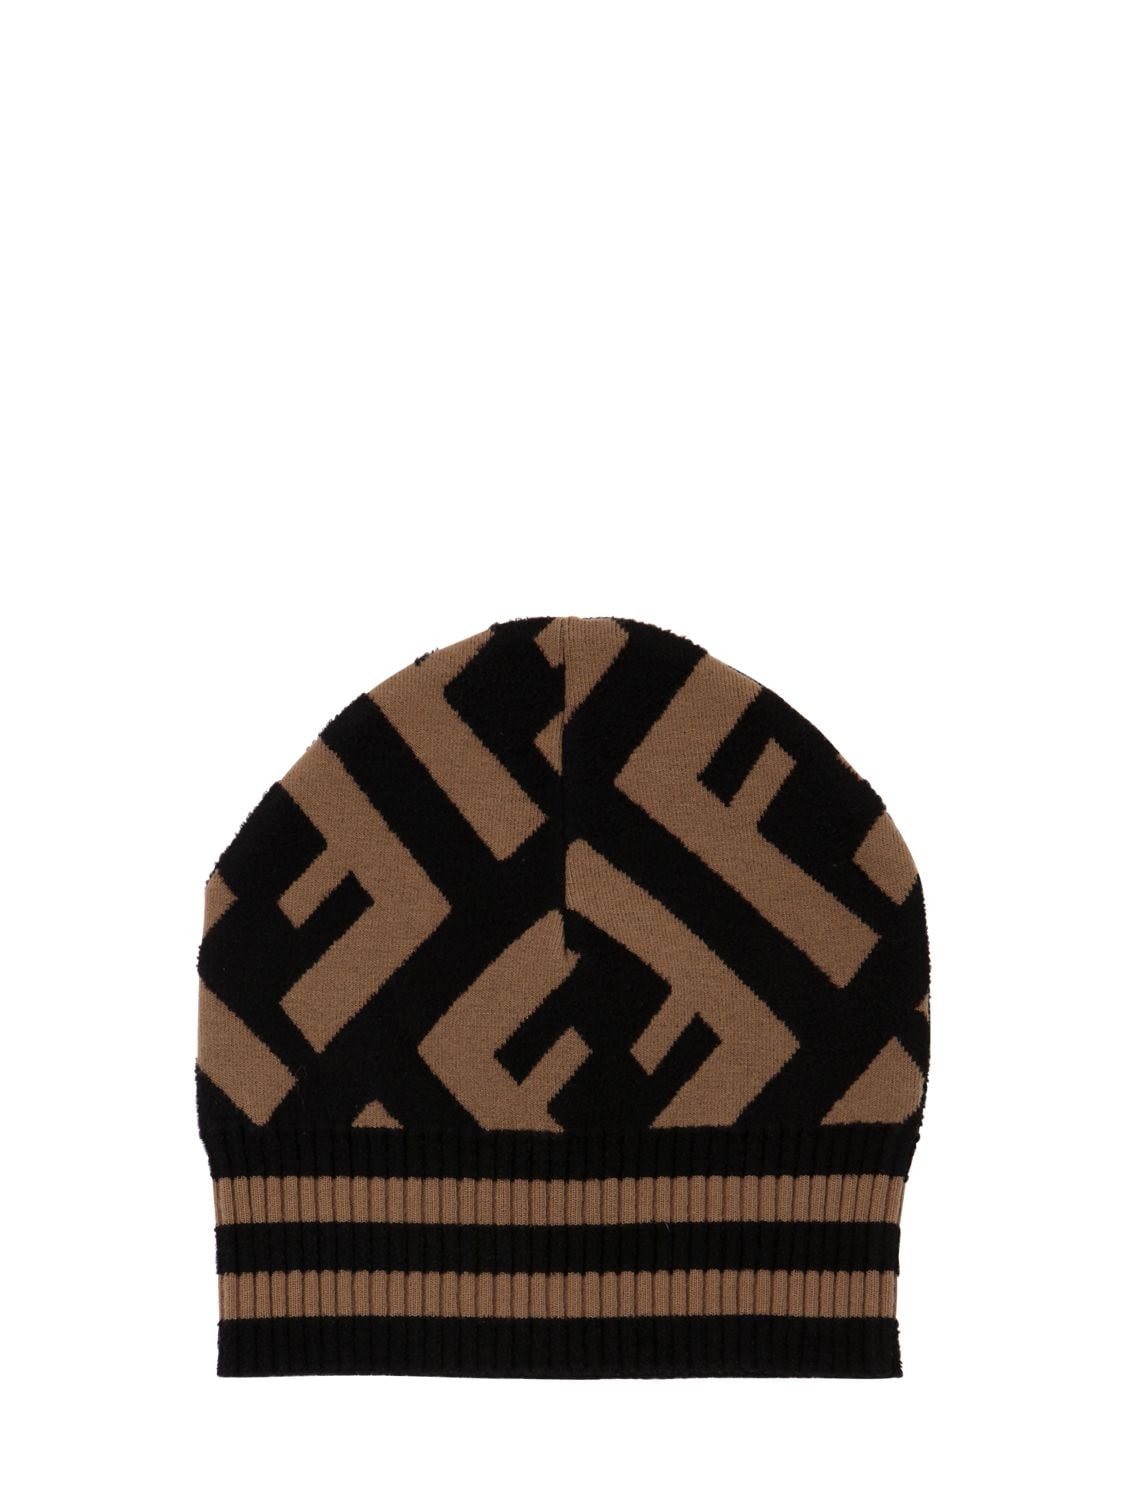 fendi knit hat